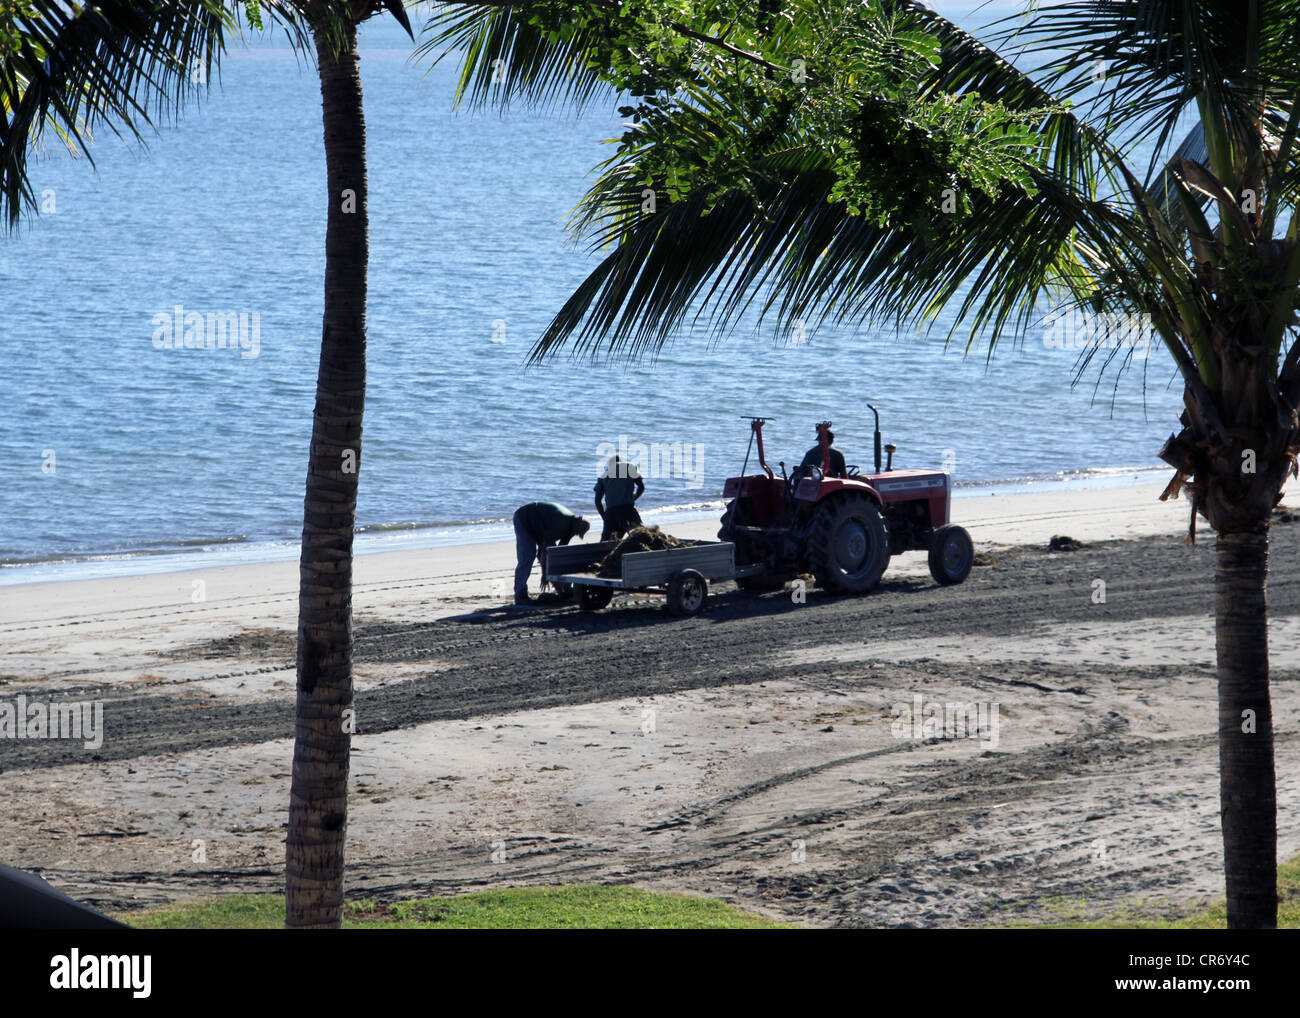 Lavoratori utilizza un trattore e rimorchio per rimuovere le alghe e debri dal beach resort sull'isola di Viti Levu, Figi, South Pacific. Foto Stock